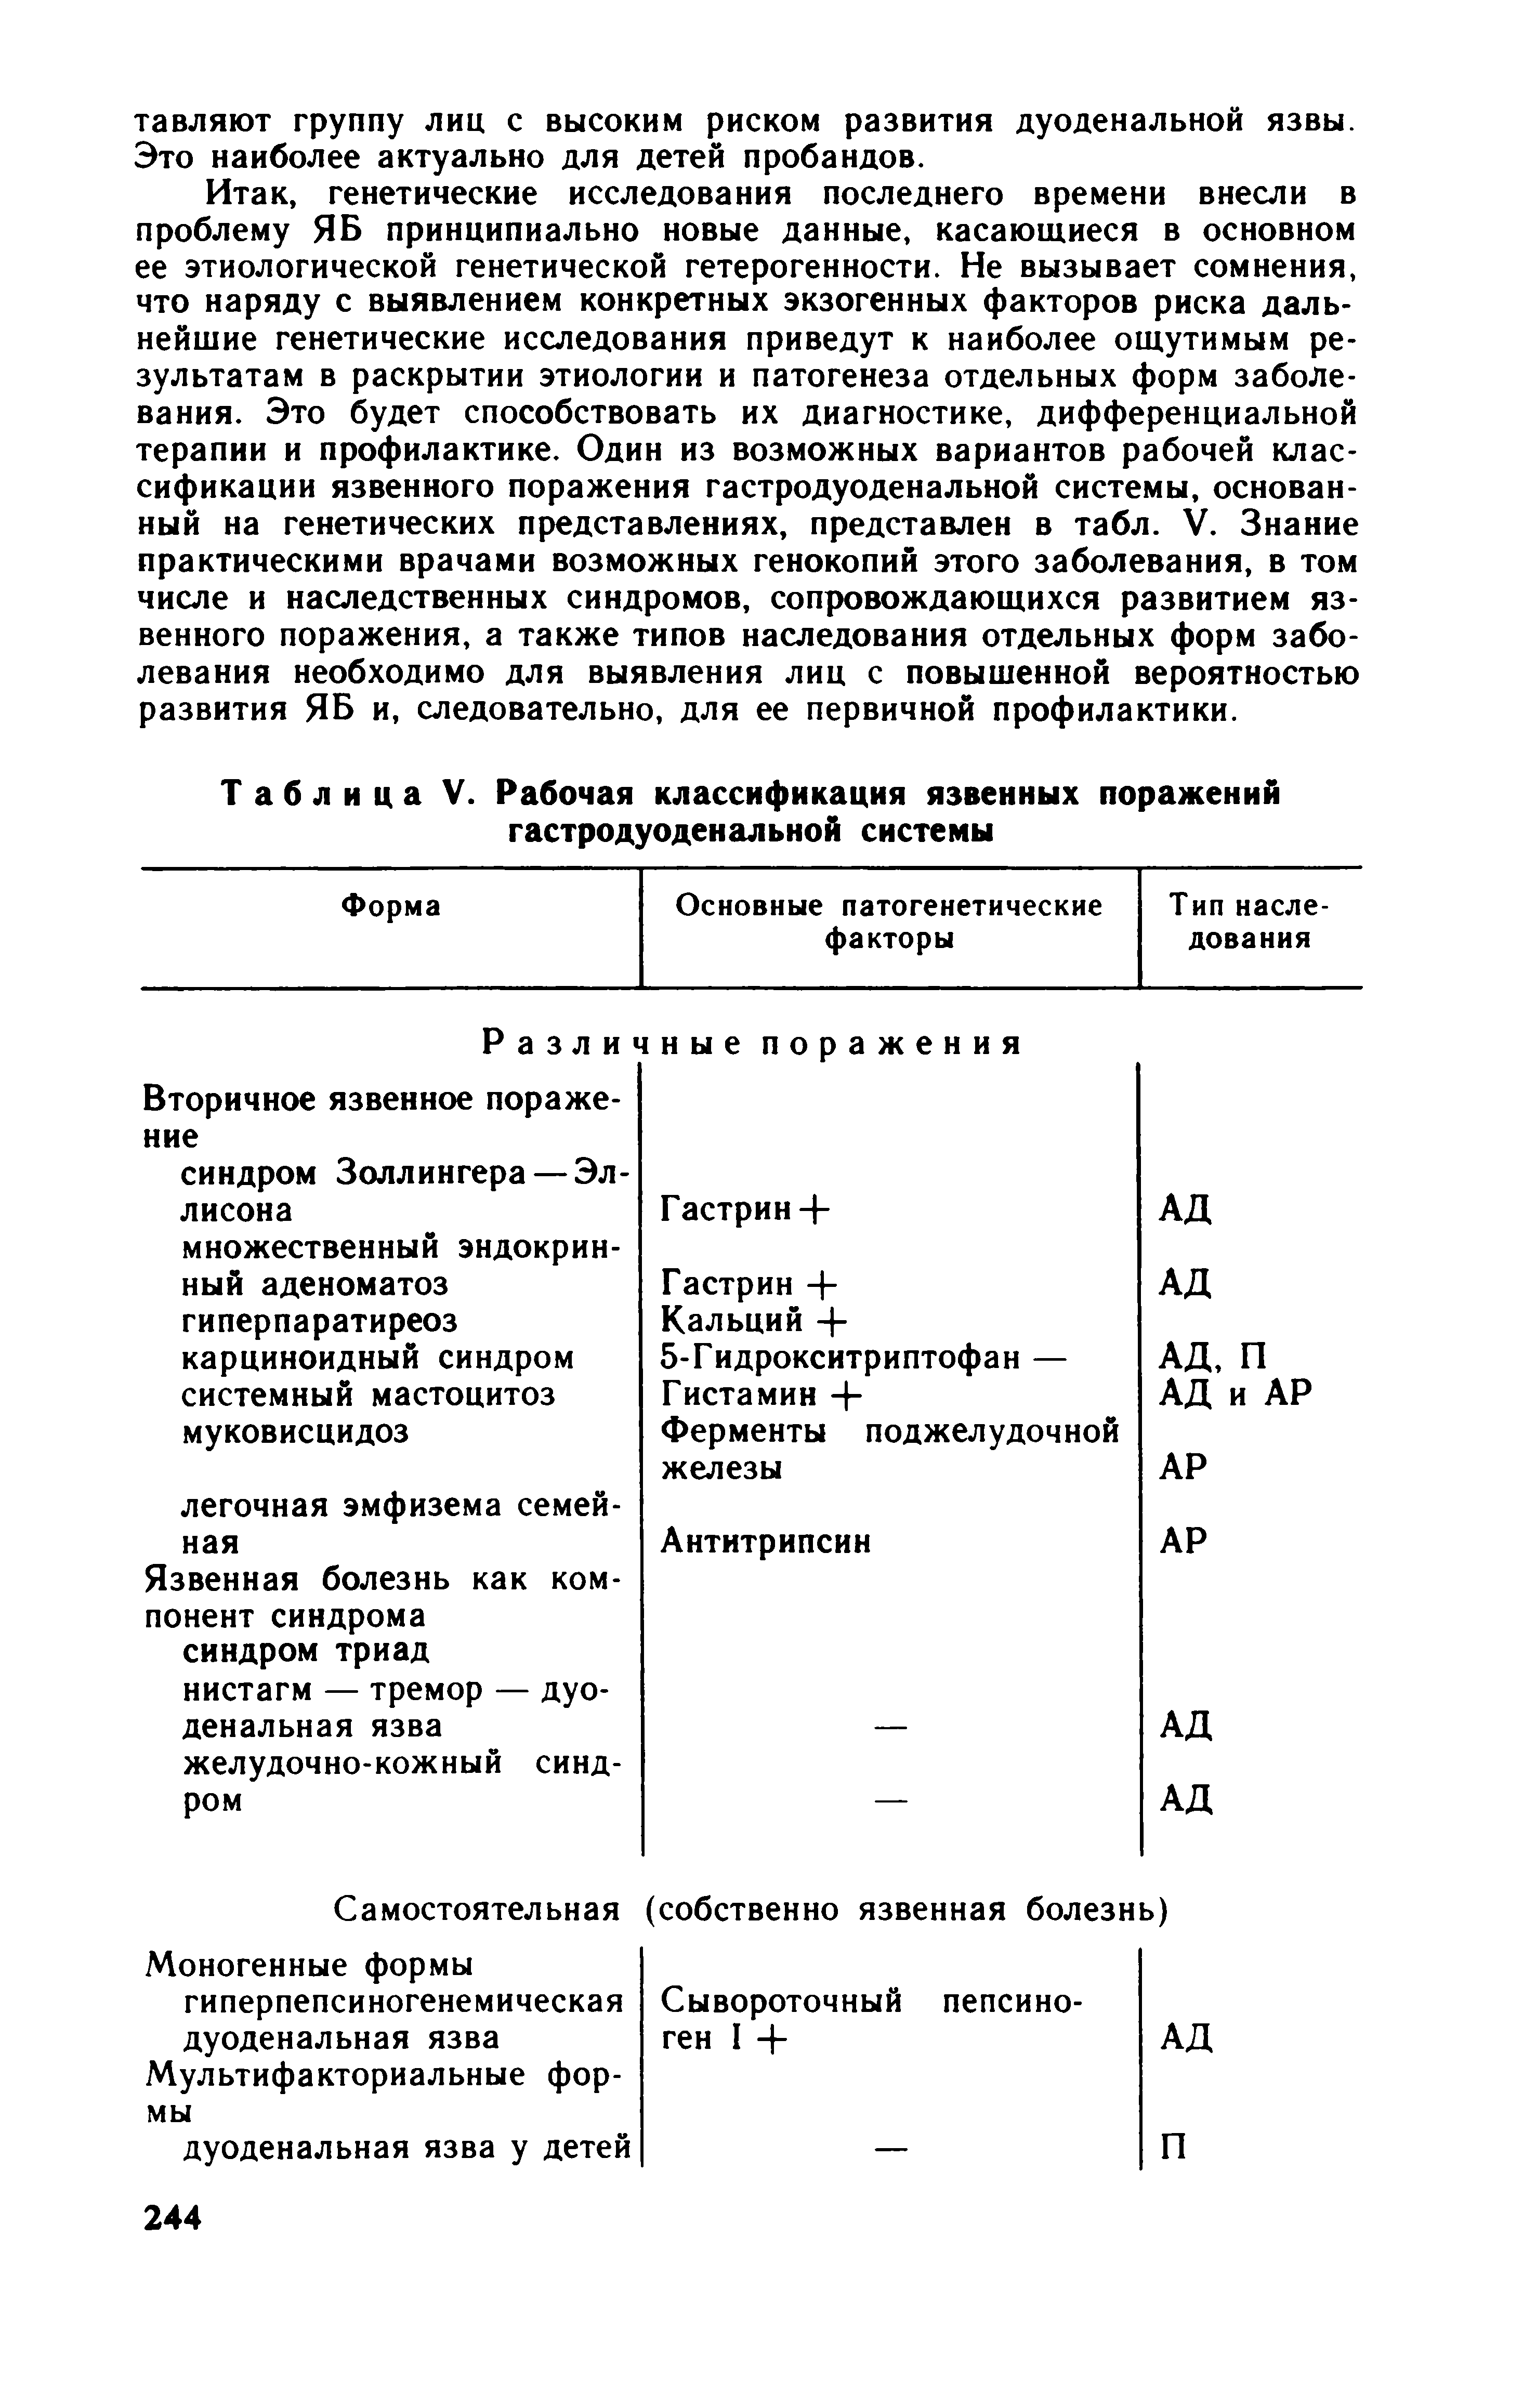 Таблица V. Рабочая классификация язвенных поражений гастродуоденальной системы...